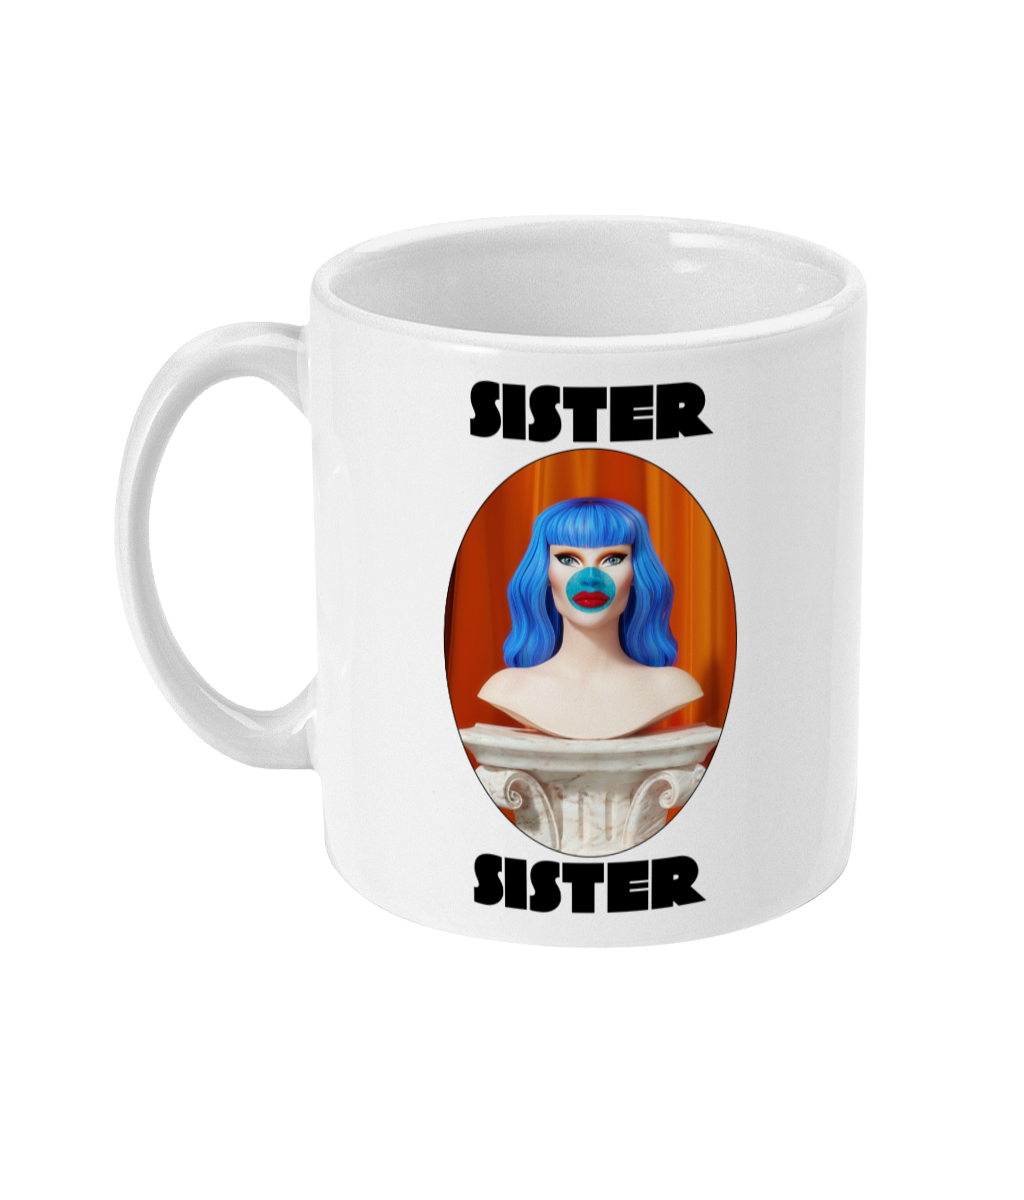 Sister Sister - Bust Mug